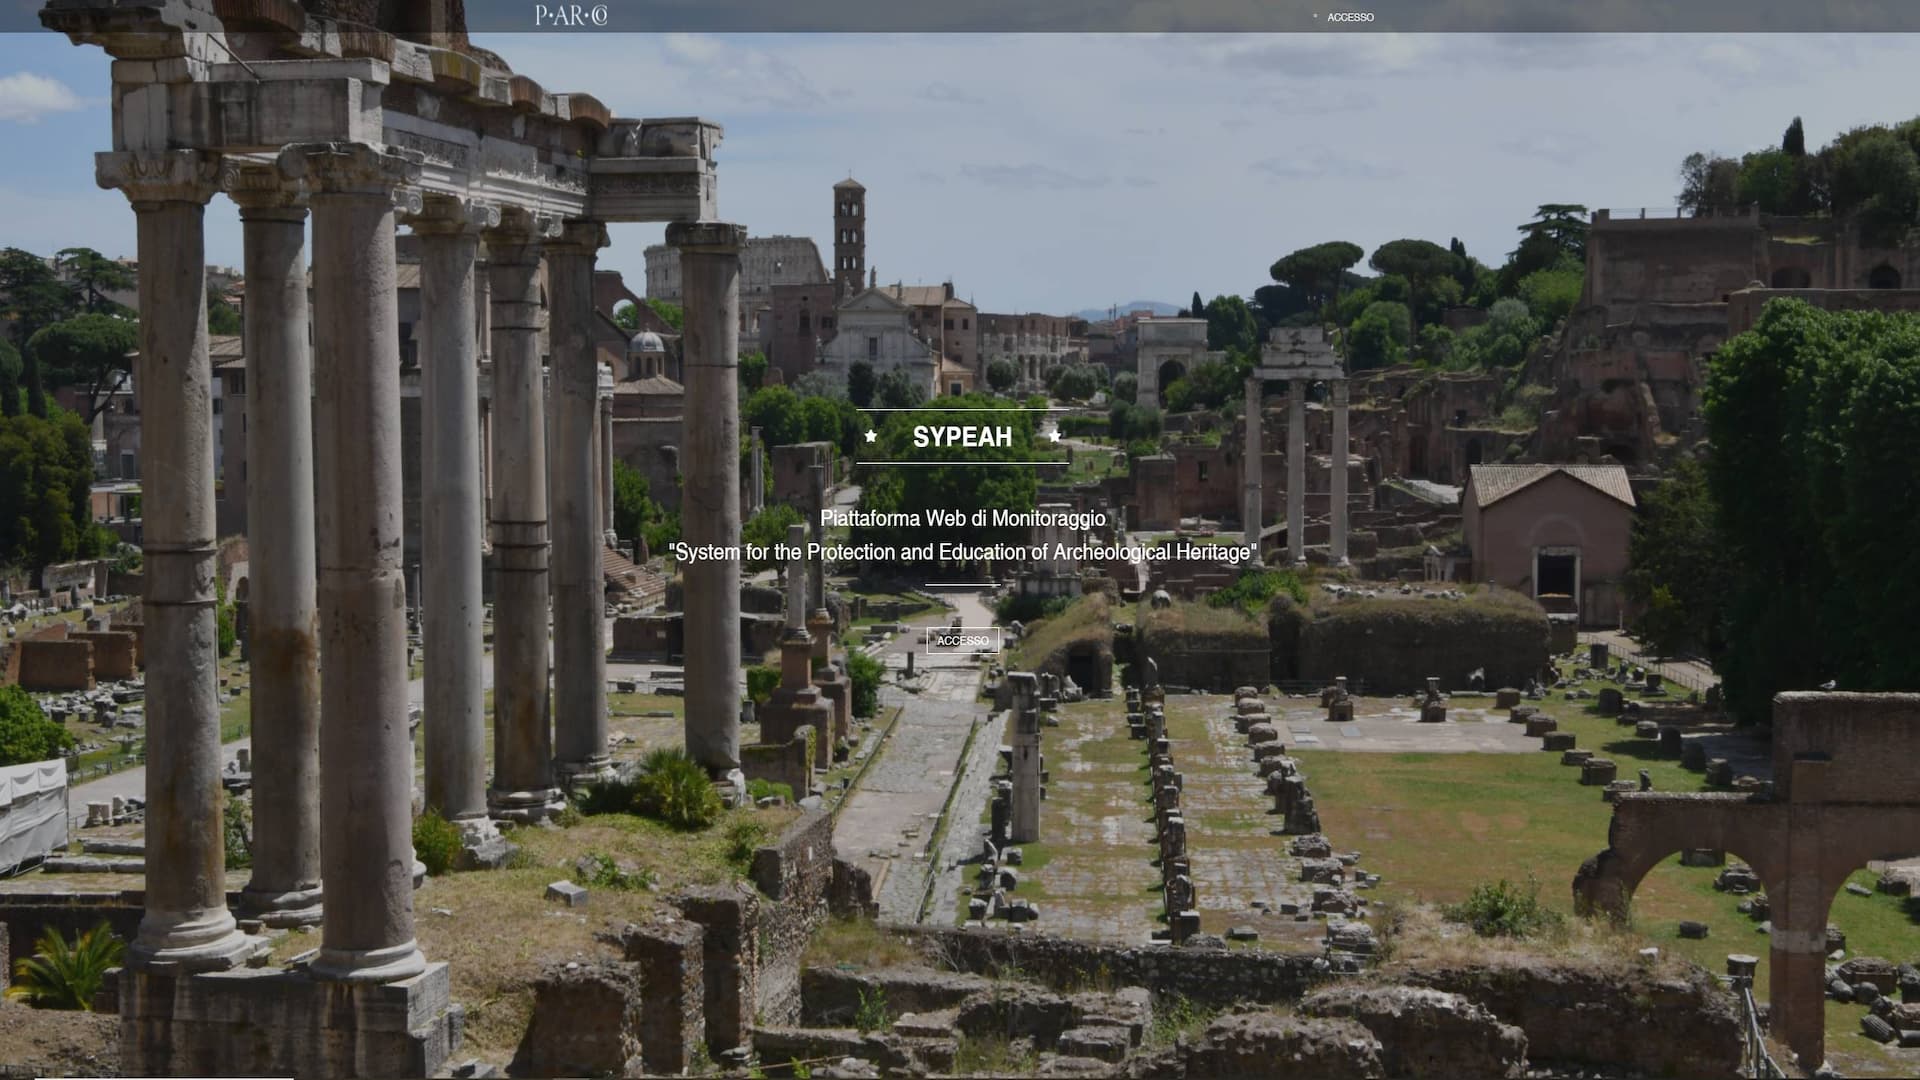 La tecnologia di SyPEAH a servizio del Parco archeologico del Colosseo